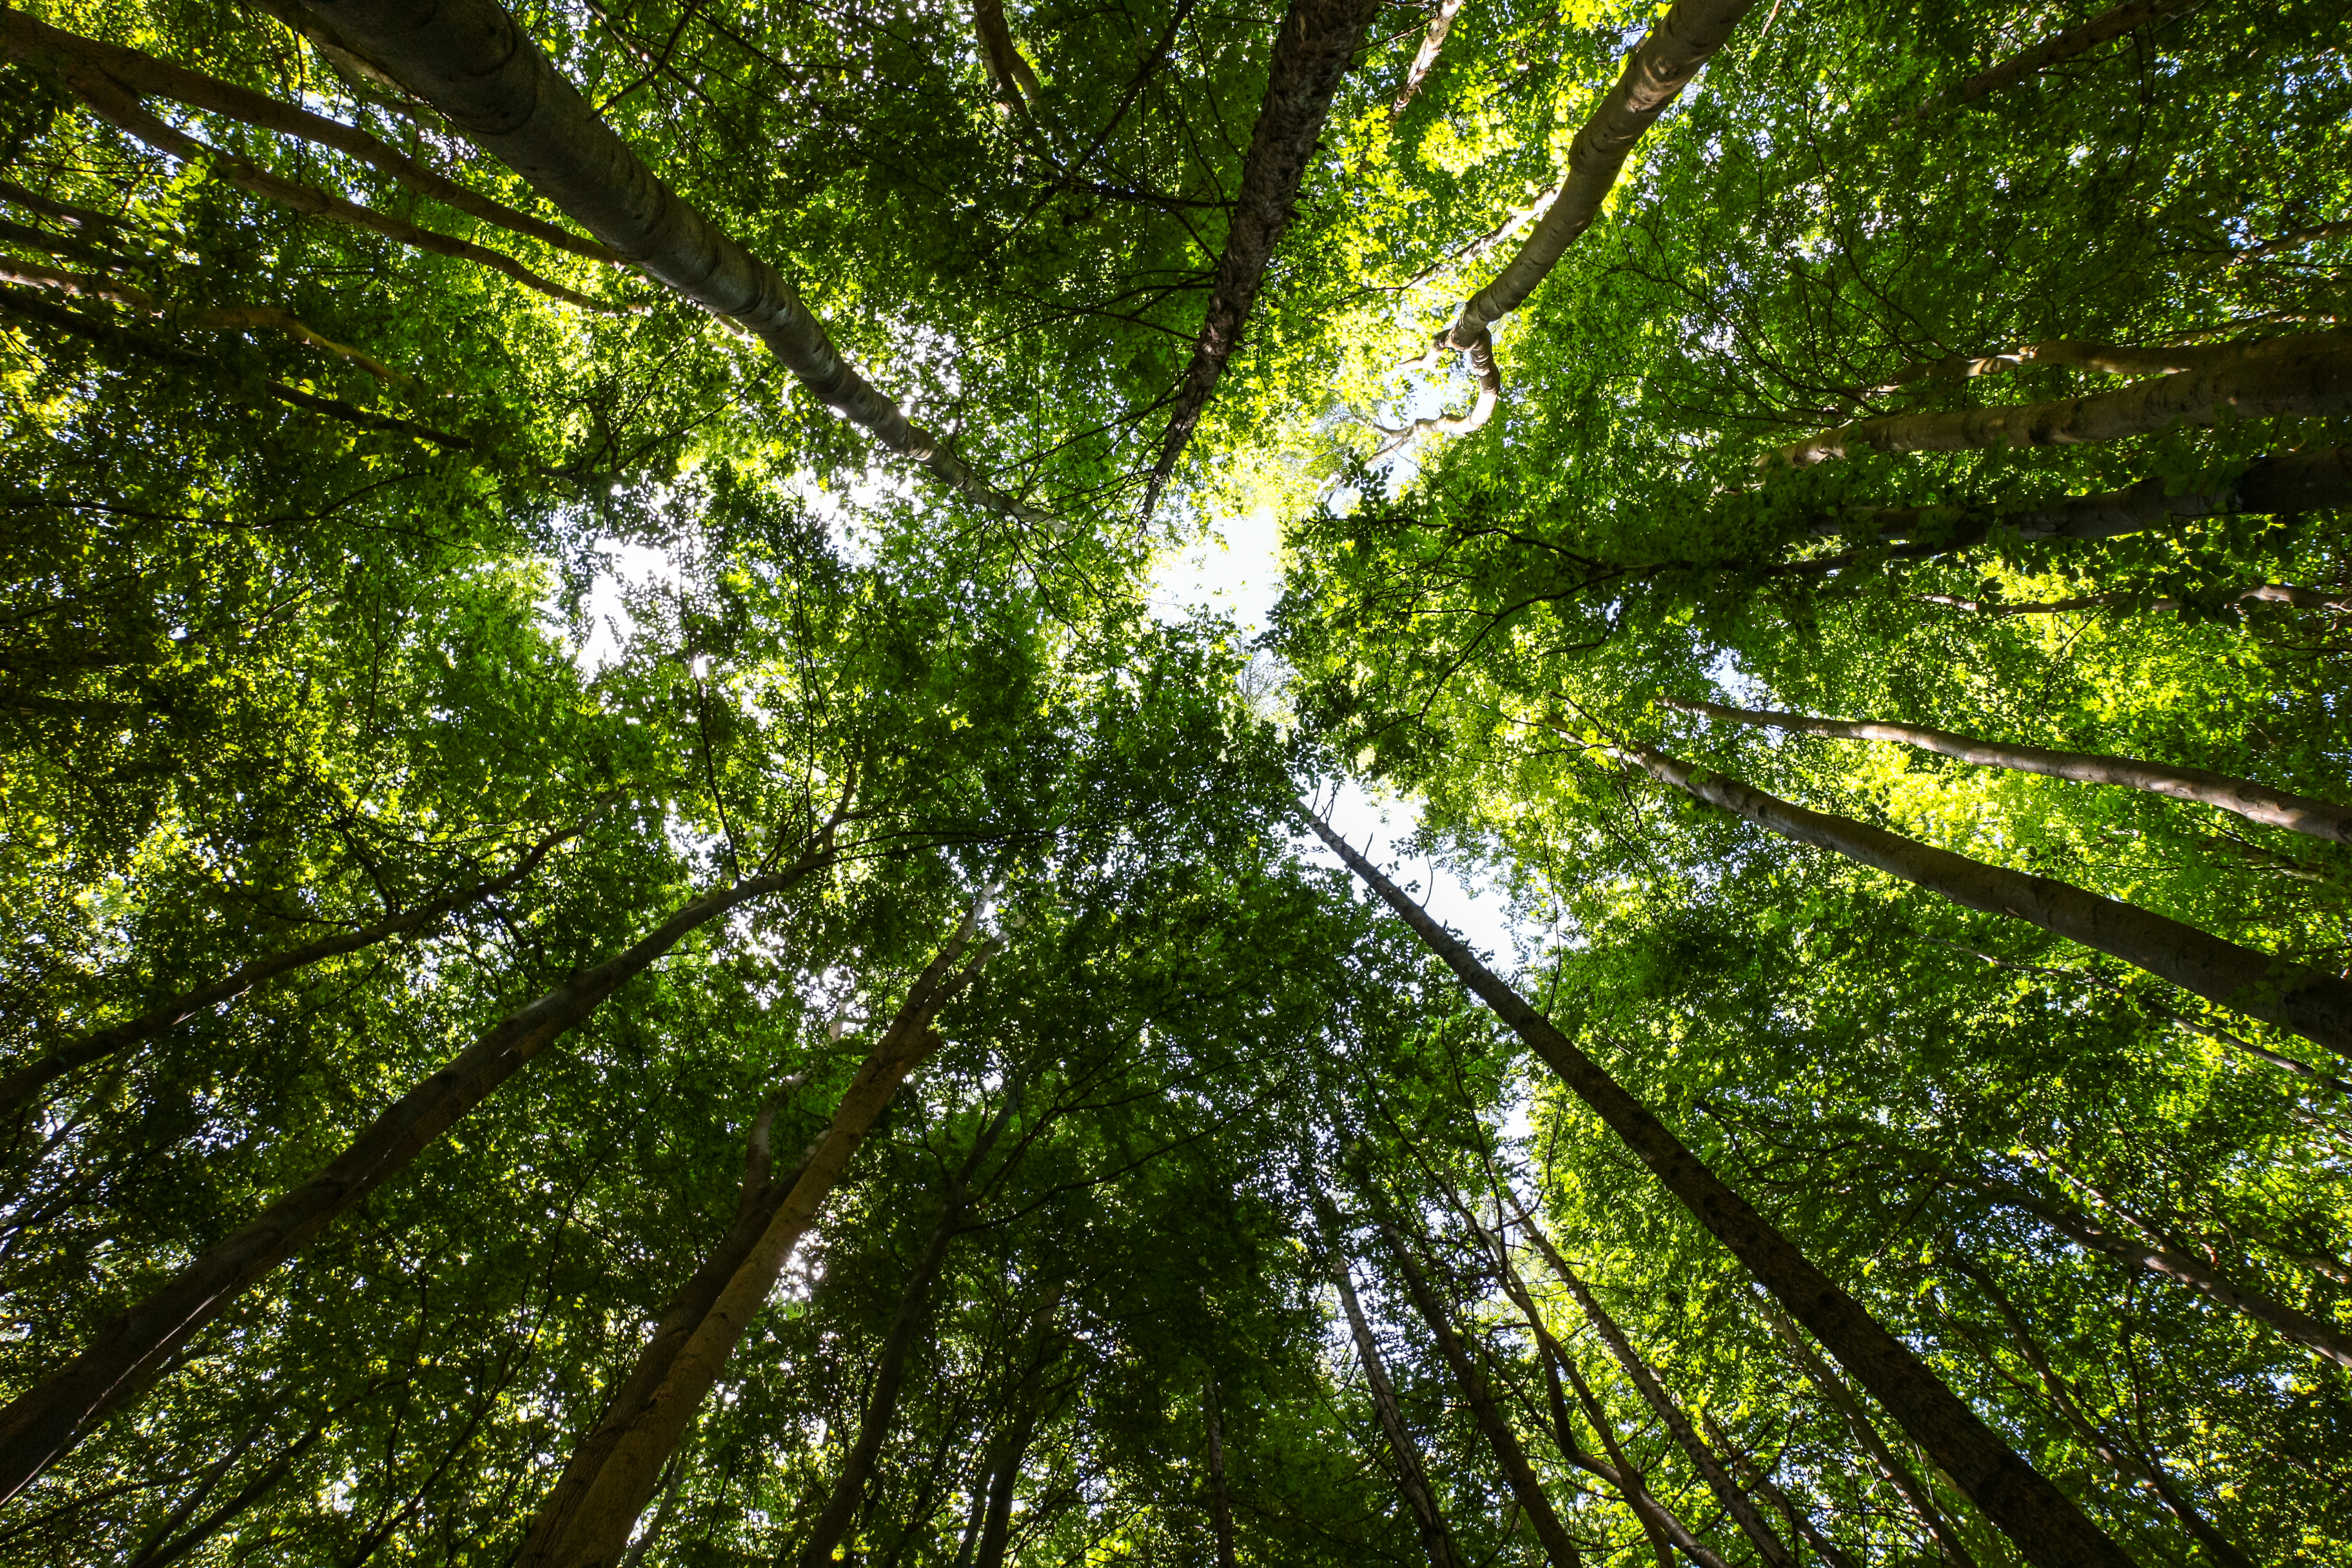 Erityiskertomus 21/2021: Luonnon monimuotoisuutta ja ilmastonmuutosta koskeva EU:n rahoitus EU:n metsille: tulokset myönteisiä mutta vaatimattomia